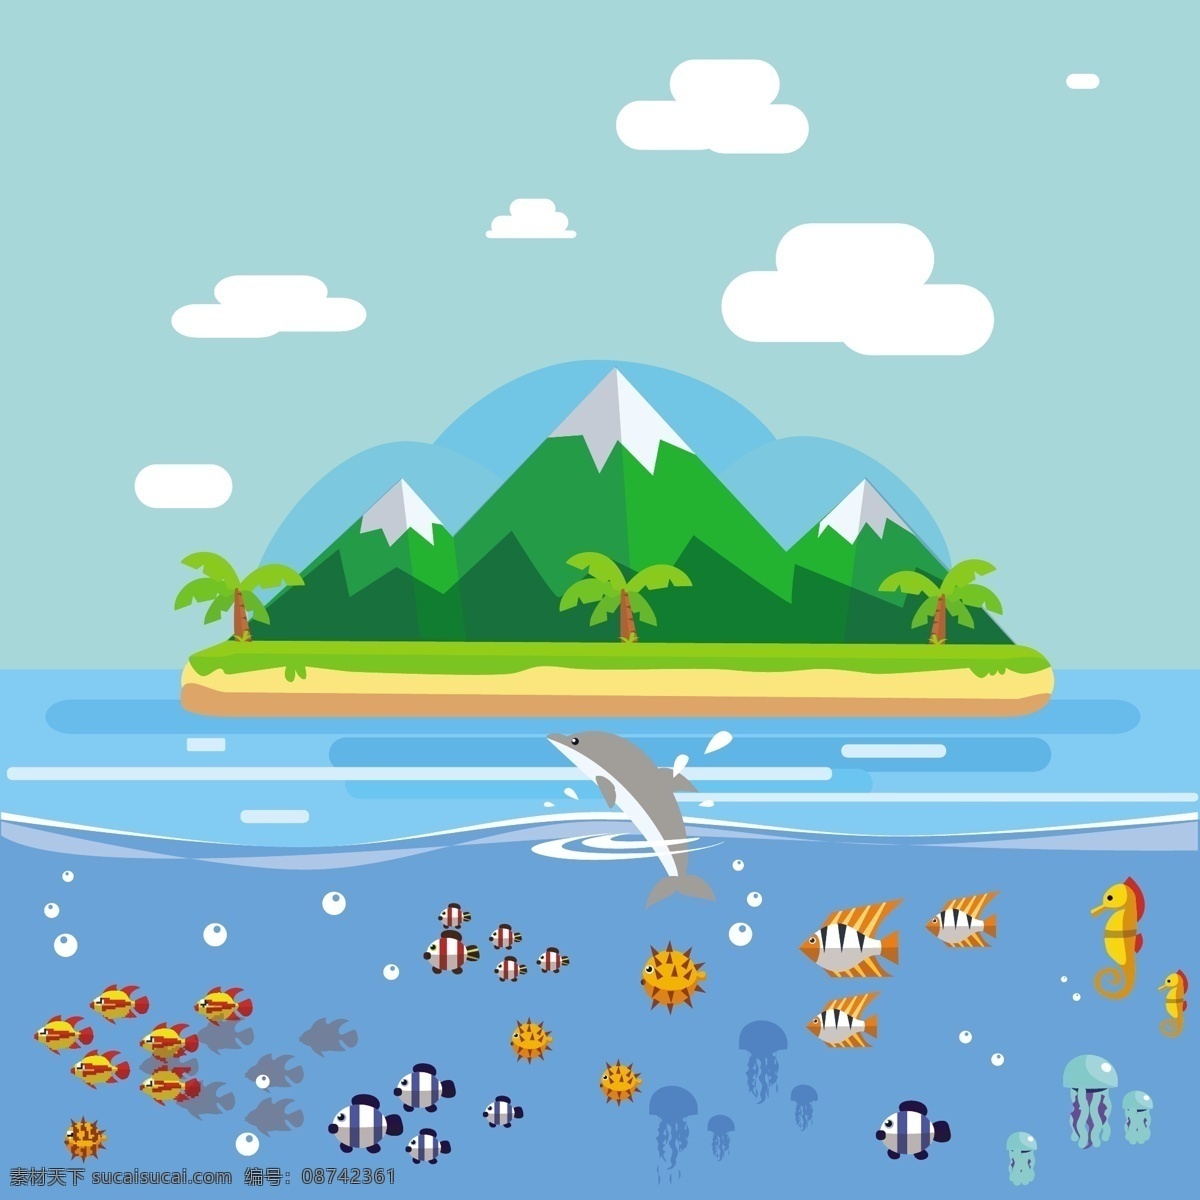 创意 岛屿 海洋 风景 矢量 创意岛屿 海洋风景 矢量素材 鱼群 矢量图 小清新 青色 天蓝色